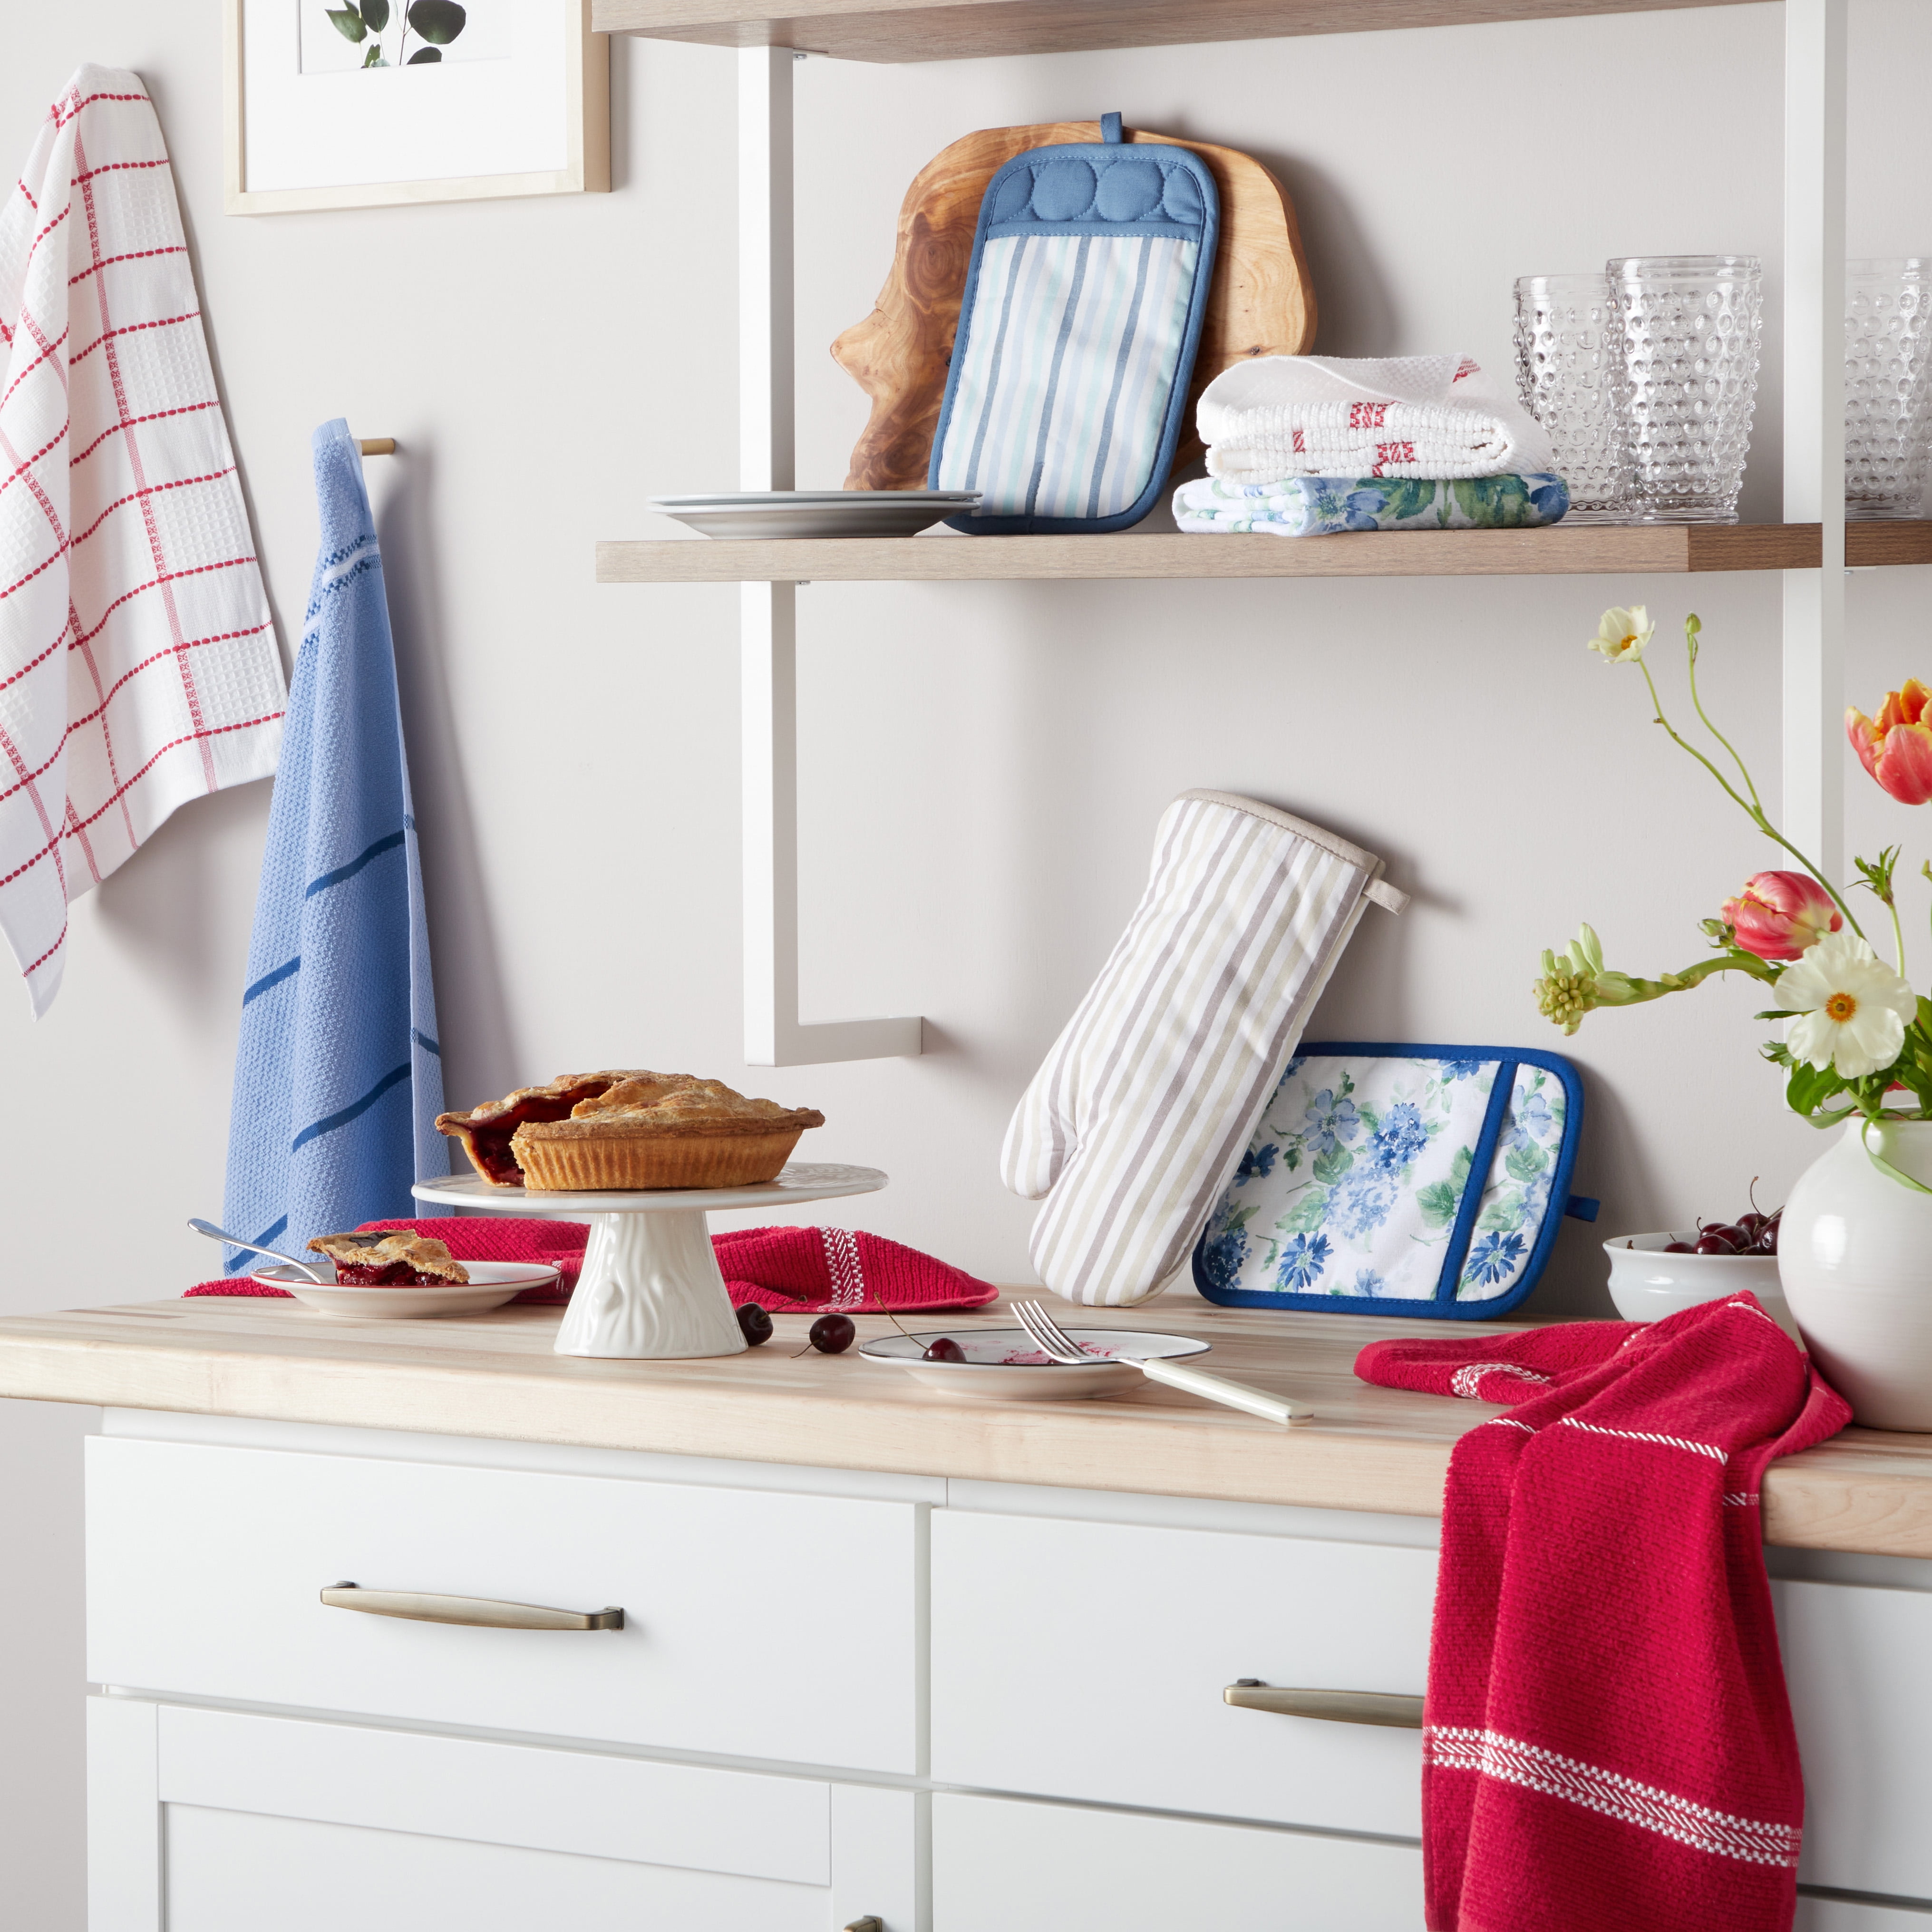 Martha Stewart Floral Vine Kitchen Towel, Set of 2